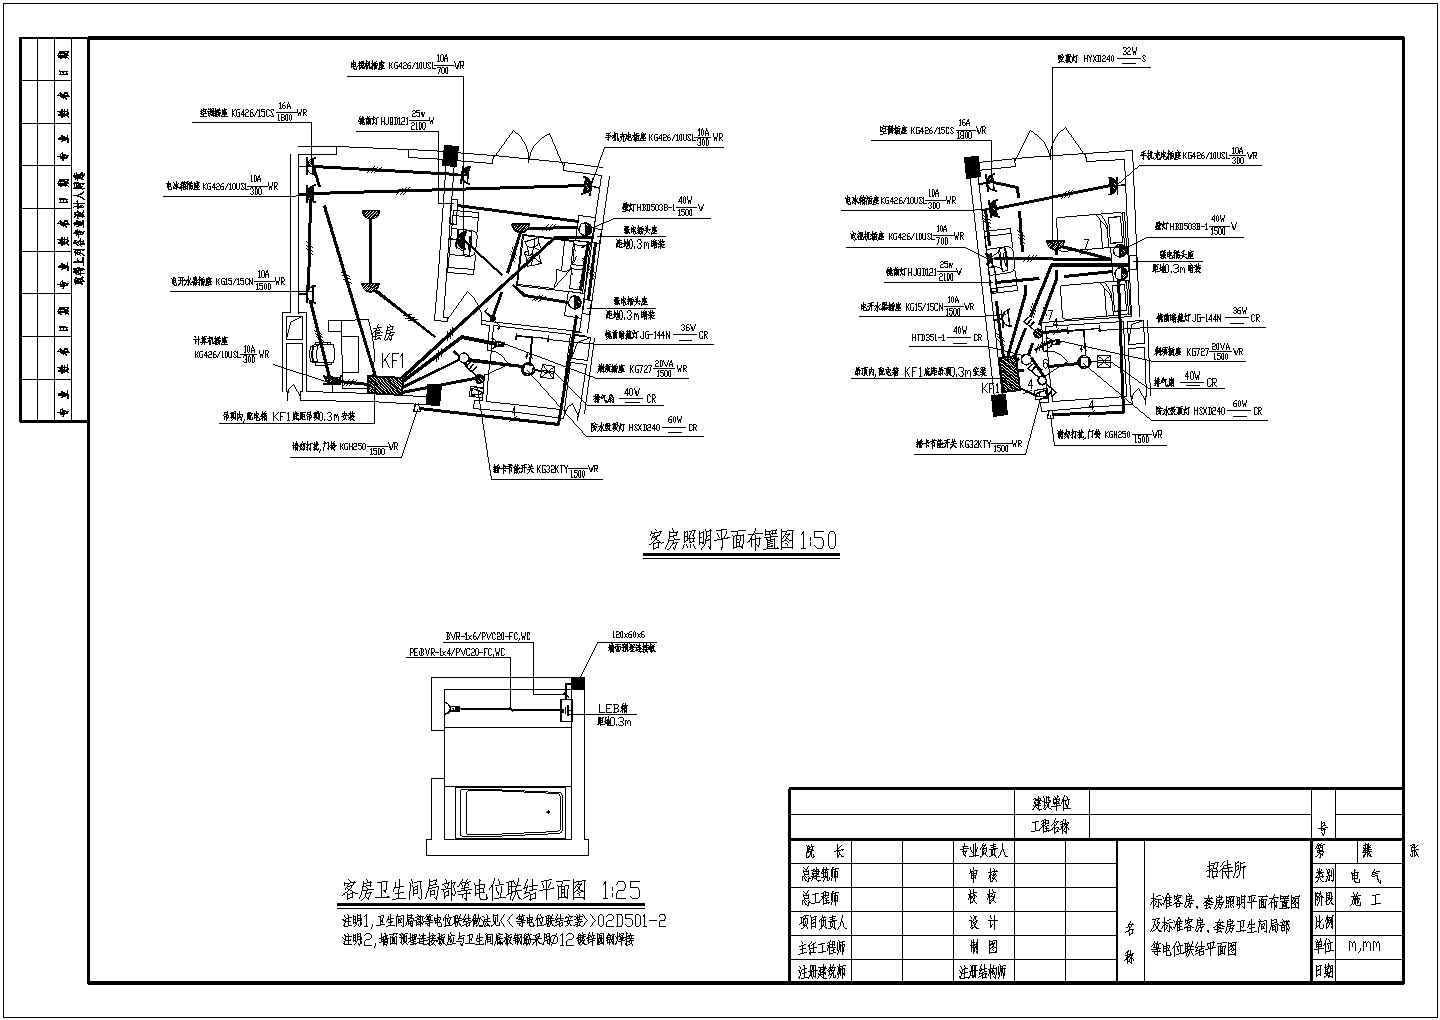 招待所电气设计方案施工全套CAD图纸